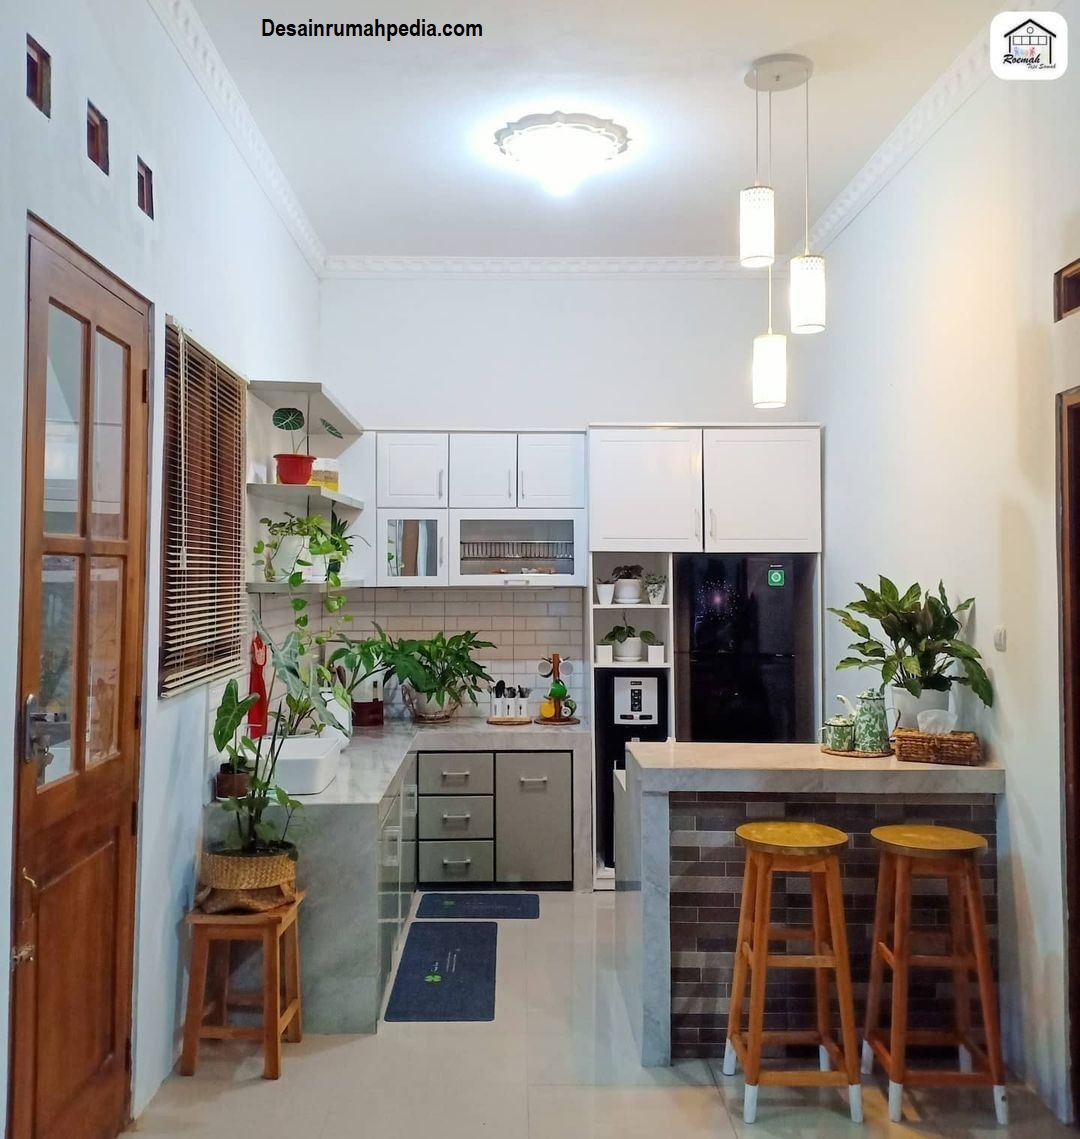 7 Desain Dapur Terbuka Sederhana Untuk Rumah Kecil Type 36 Desainrumahpediacom Inspirasi Desain Rumah Minimalis Modern